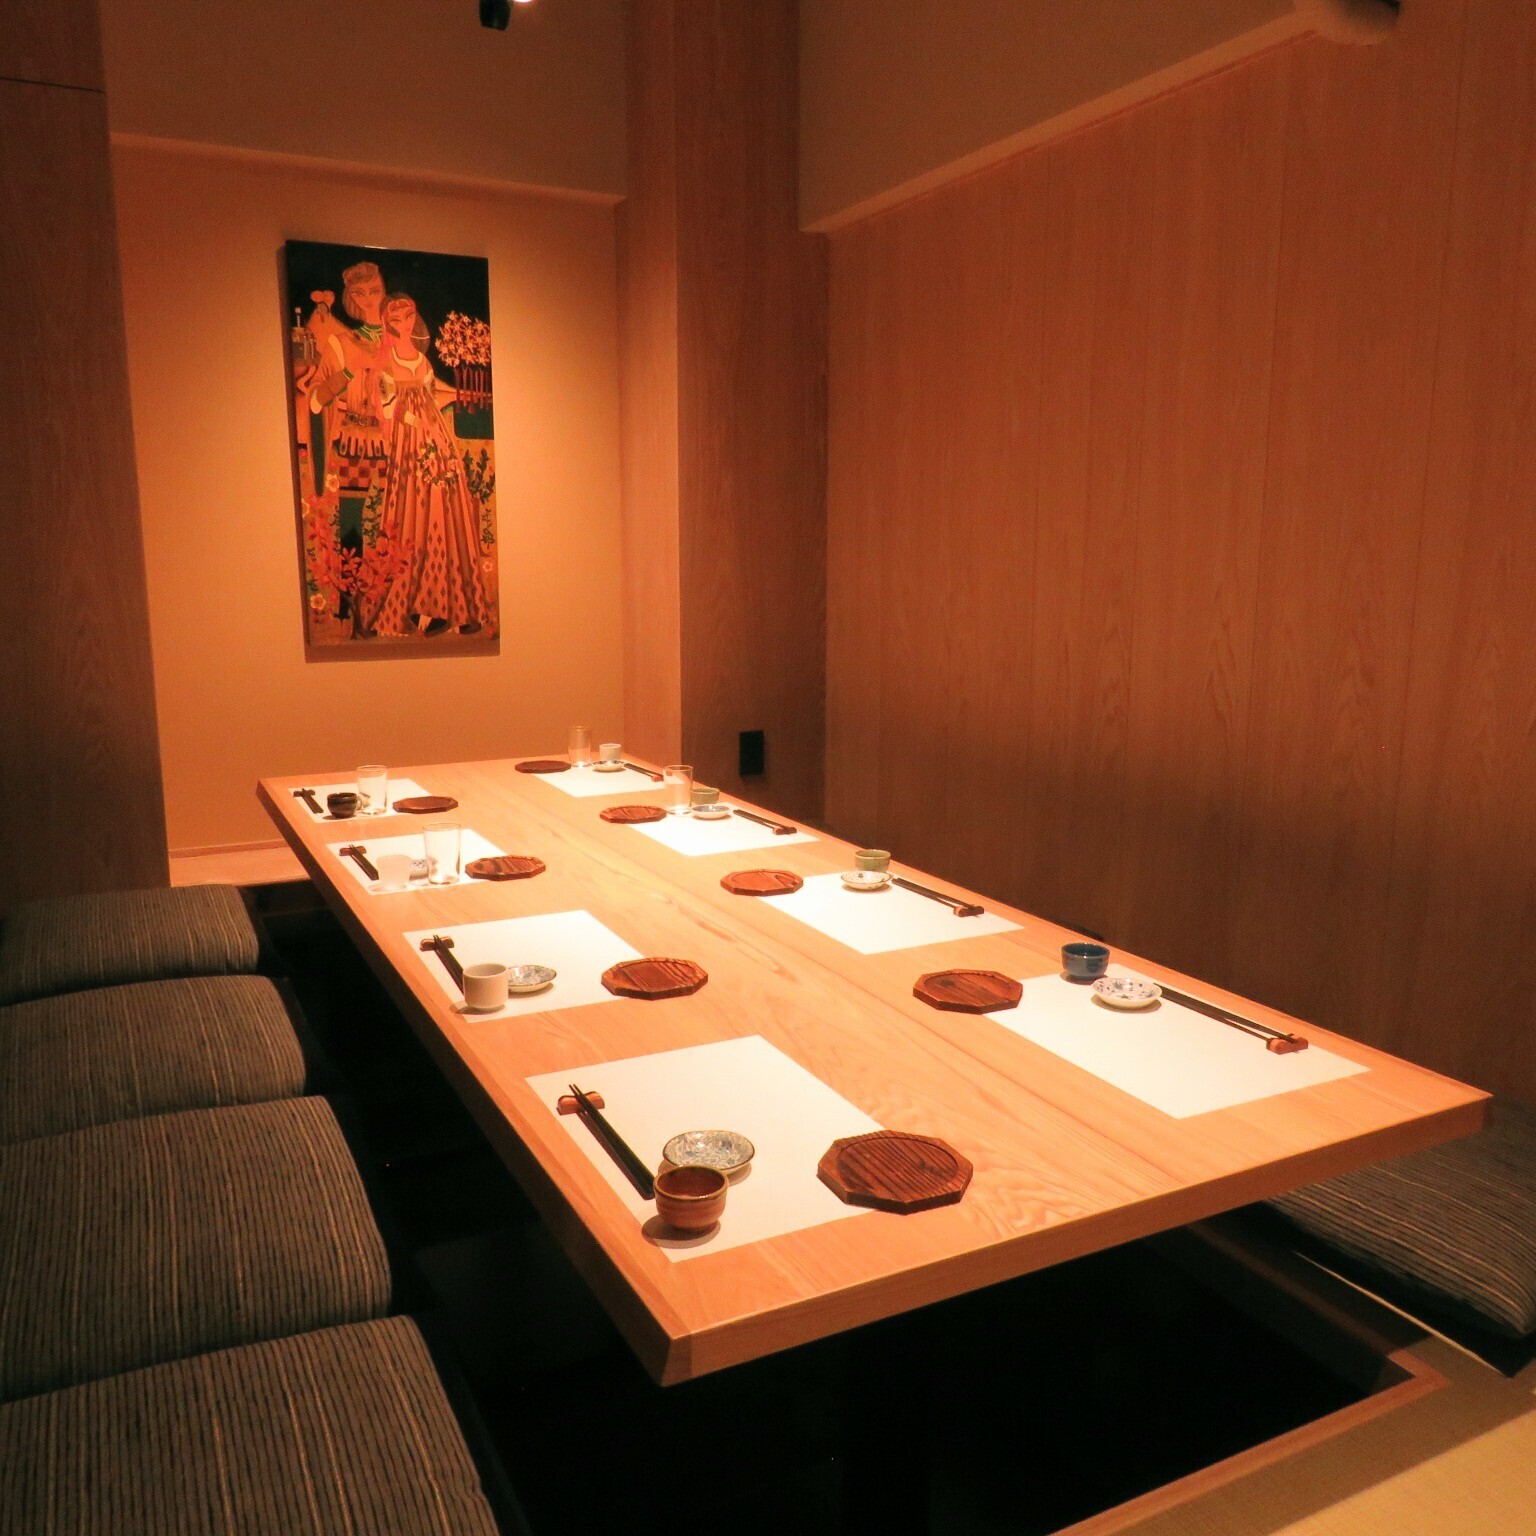 食べログ3 5以上多数 錦糸町のおすすめ居酒屋選 安い おしゃれ 個室など各カテゴリーの人気店を紹介 めしレポ